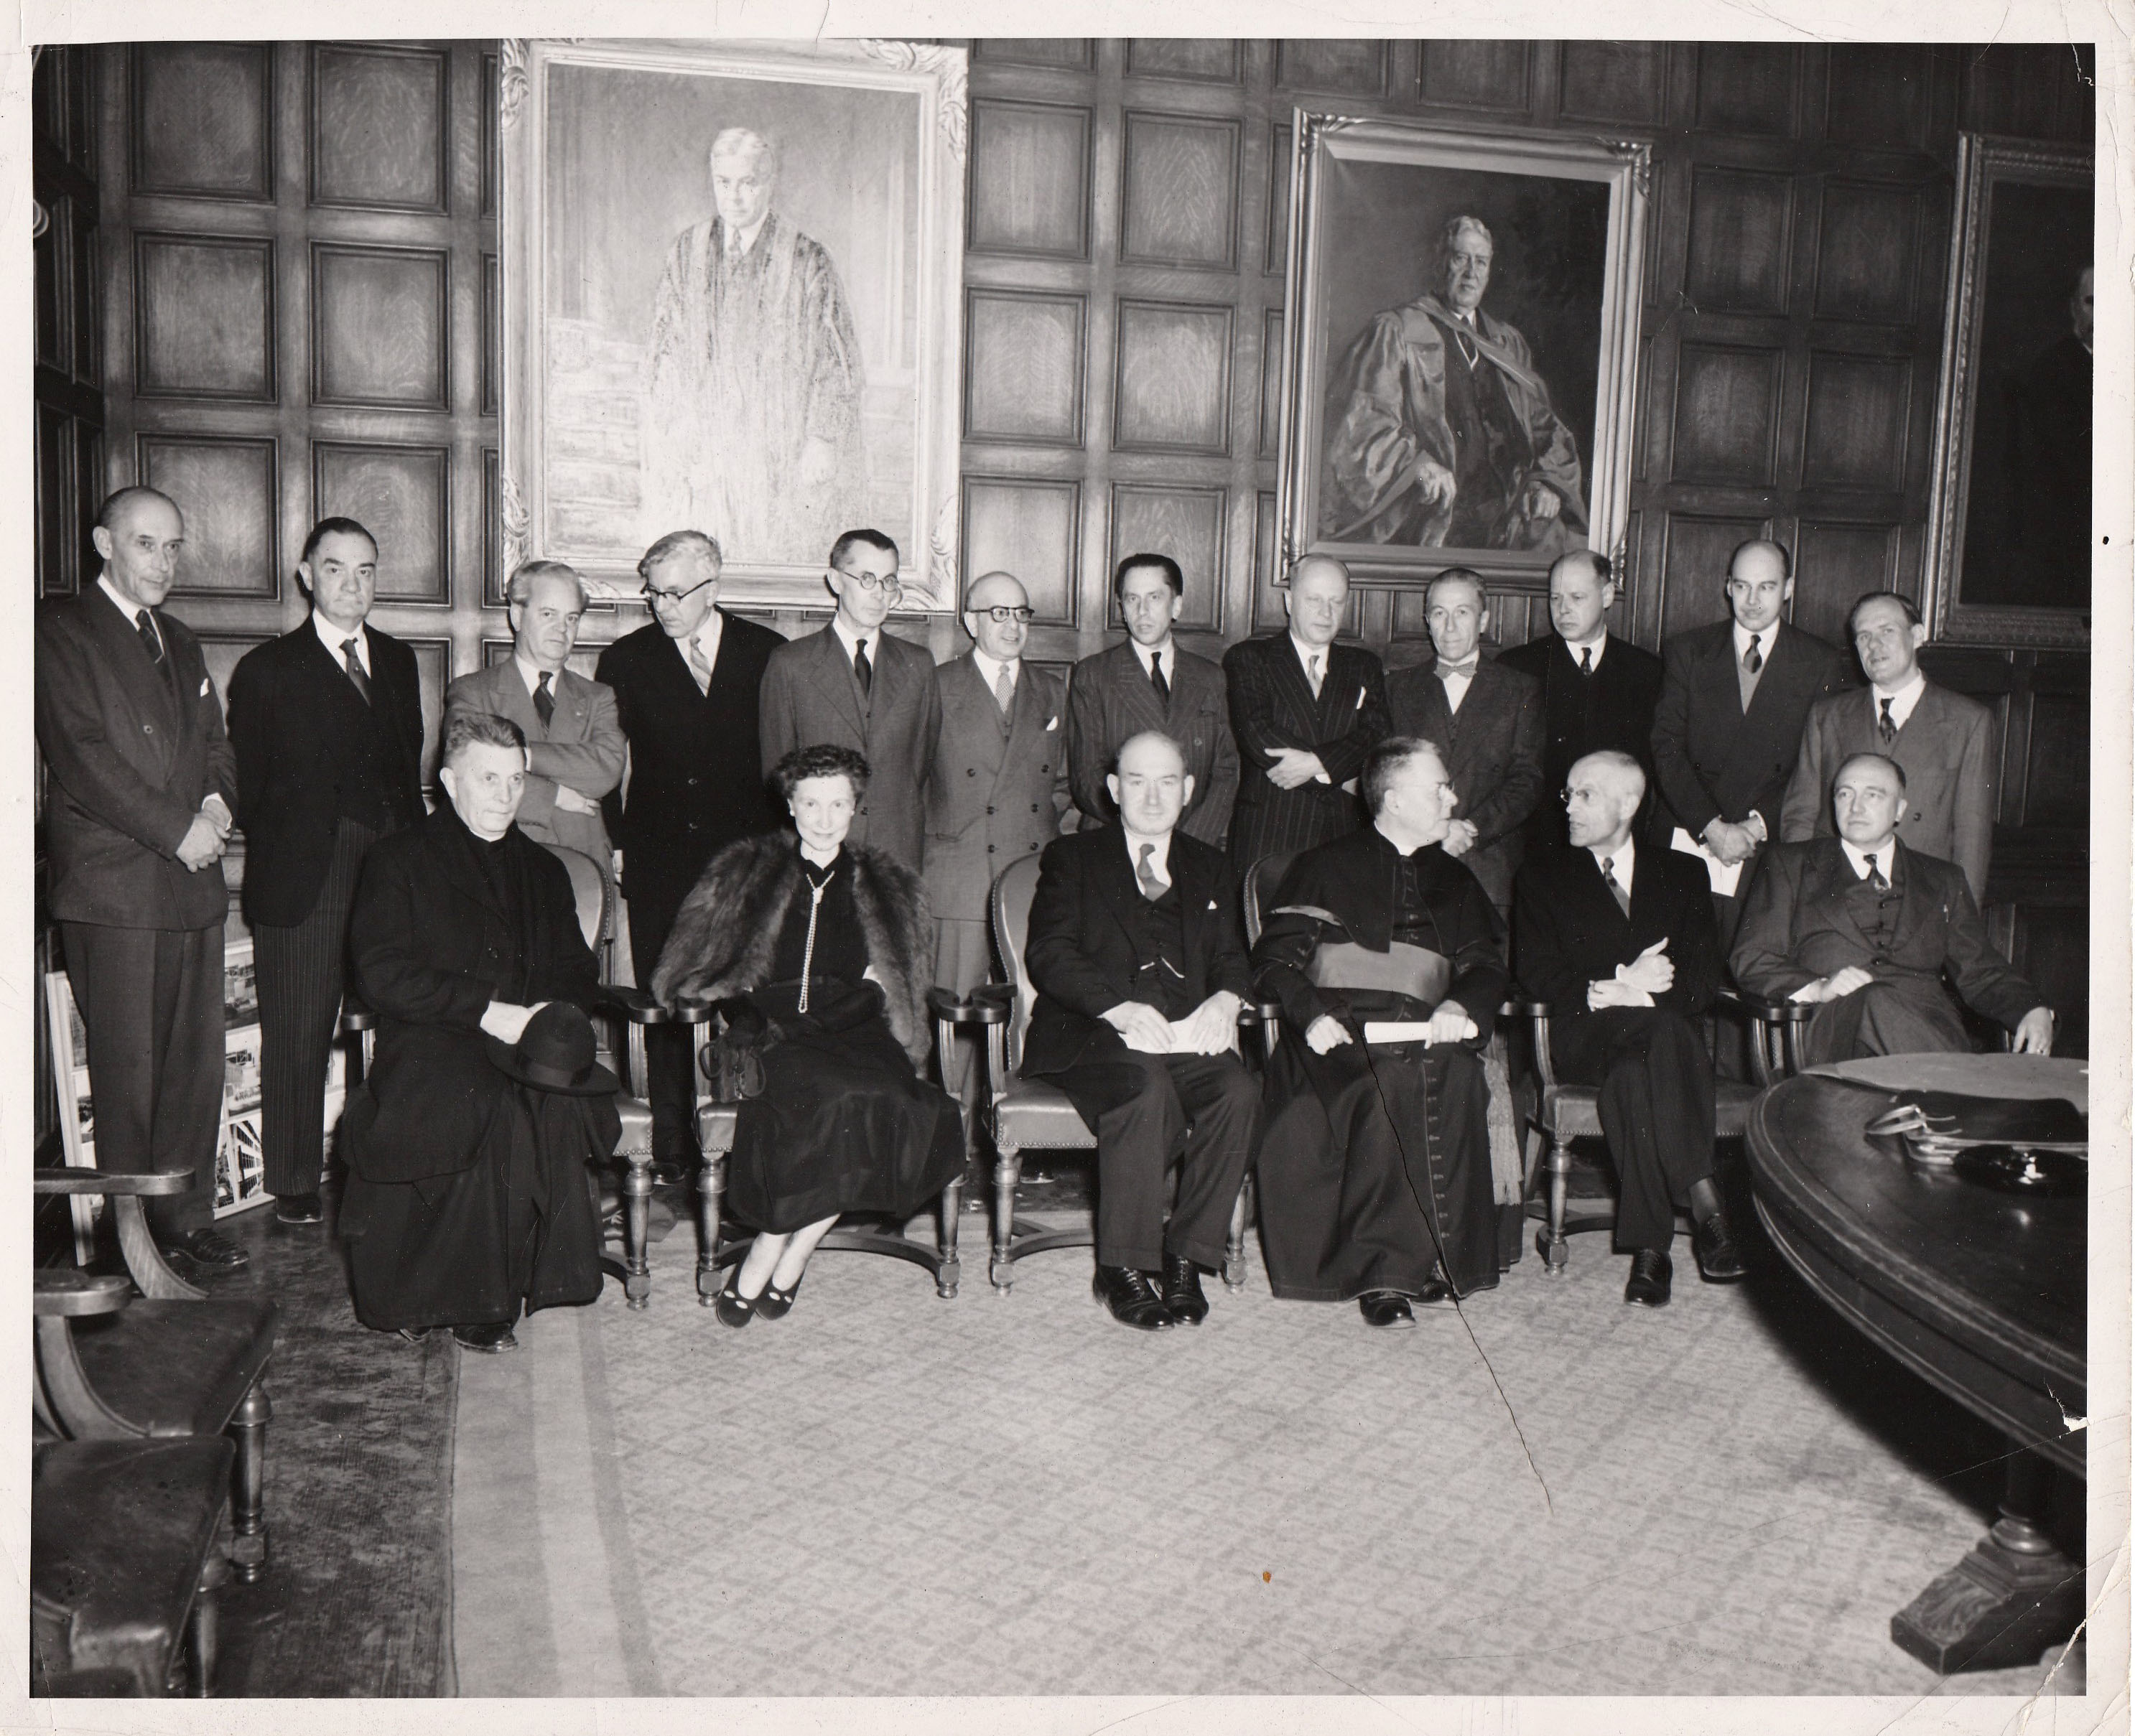 Wanda Stachiewicz (2e de la rangée du bas), assise parmi ses collègues masculins, lors d’un évènement non identifié. Il pourrait s’agir de l’inauguration de l’Institut polonais des arts et des sciences au Canada.